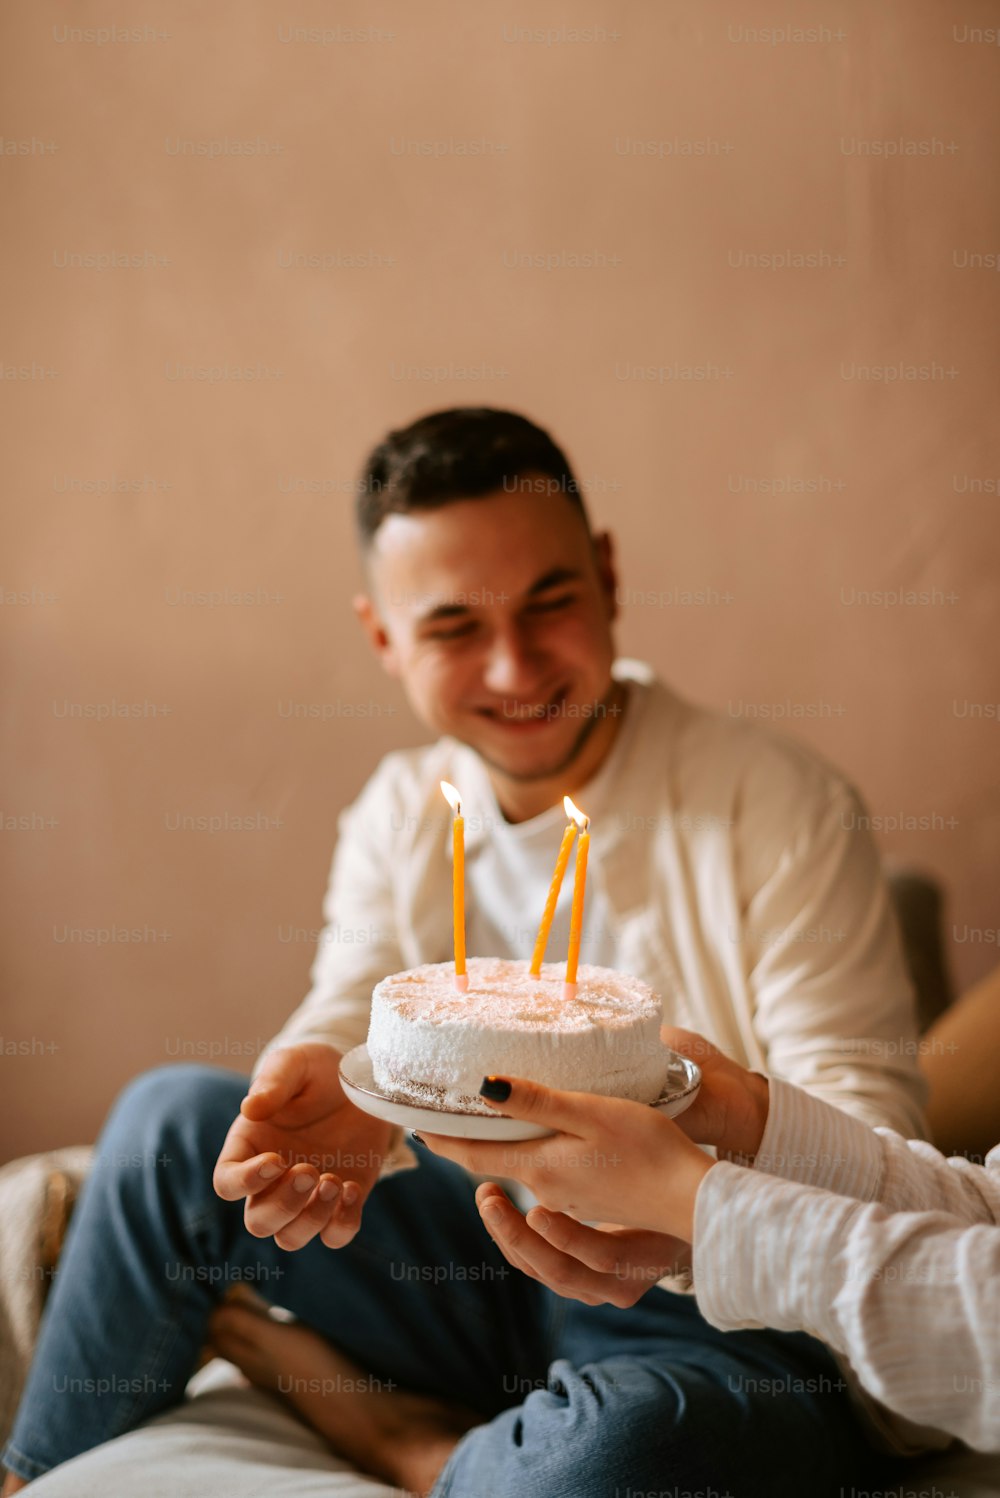 Ein Mann hält einen Kuchen mit Kerzen darin